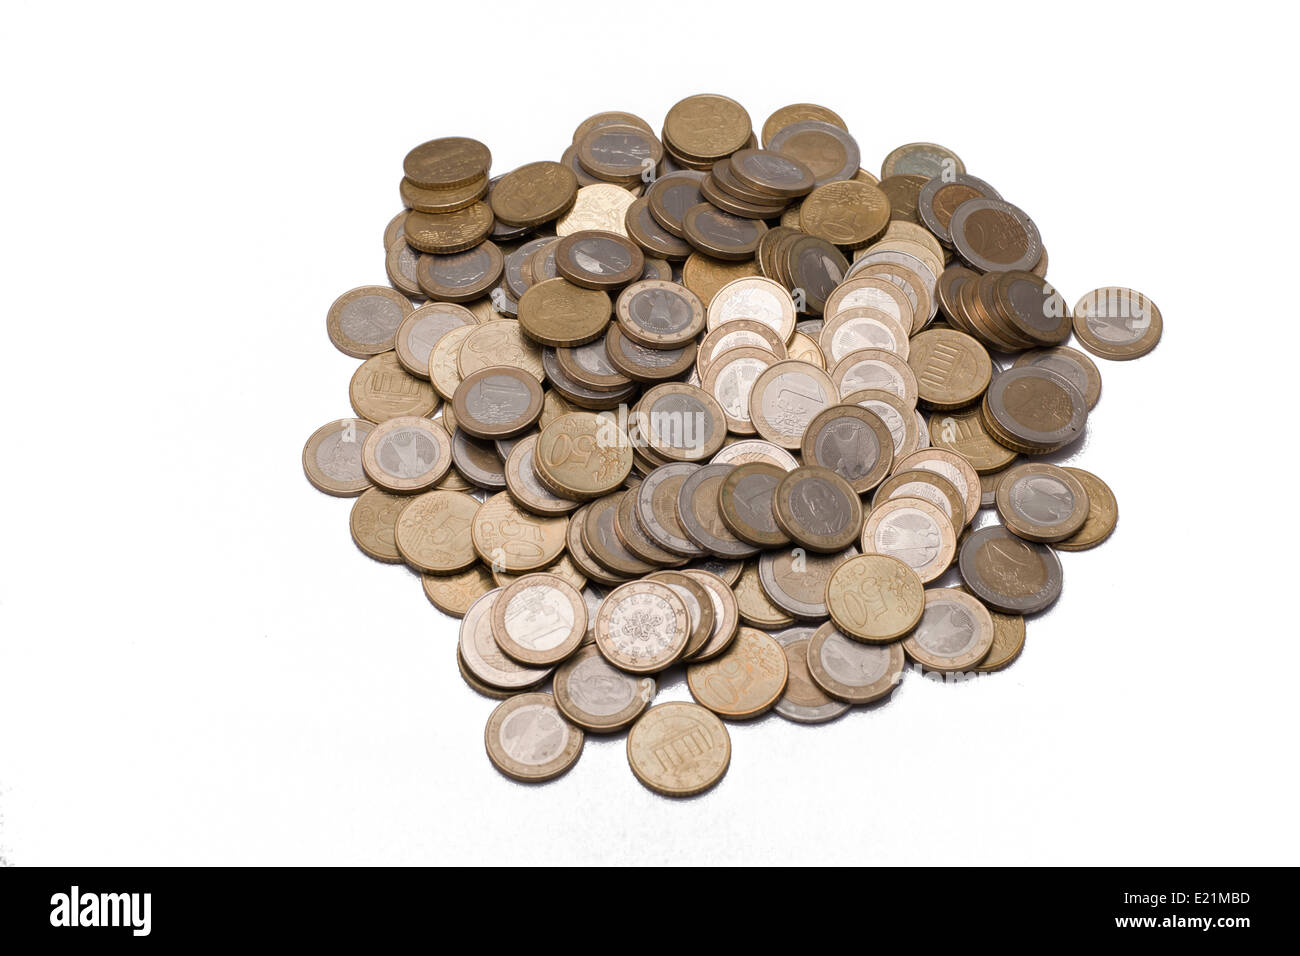 Many Euro coins Stock Photo